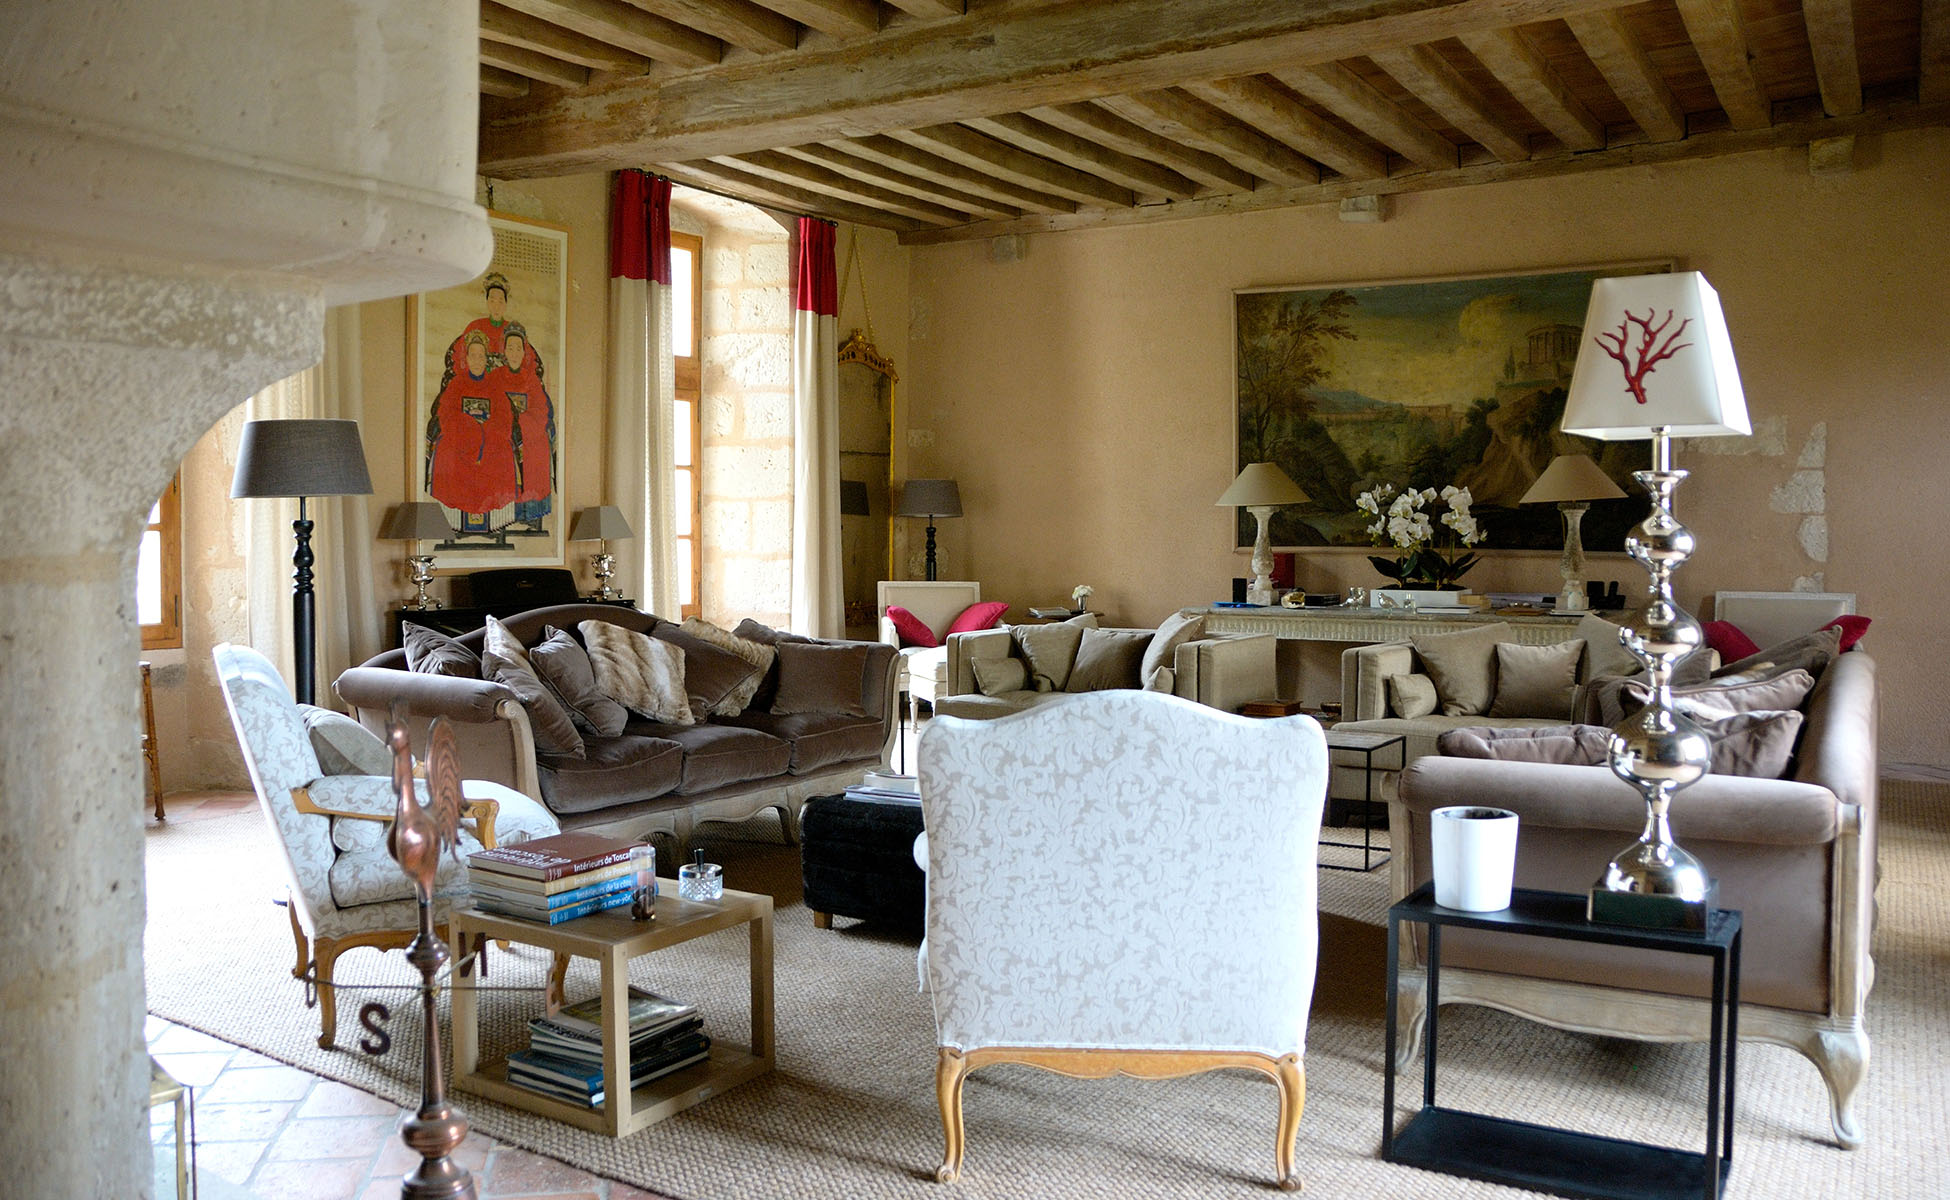 Lovelydays luxury service apartment rental - Île-de-France - Paris - Chateau de Boigneville - Lovelysuite - 7 bedrooms - 7 bathrooms - Double living room - 32755202910c - Lovelydays